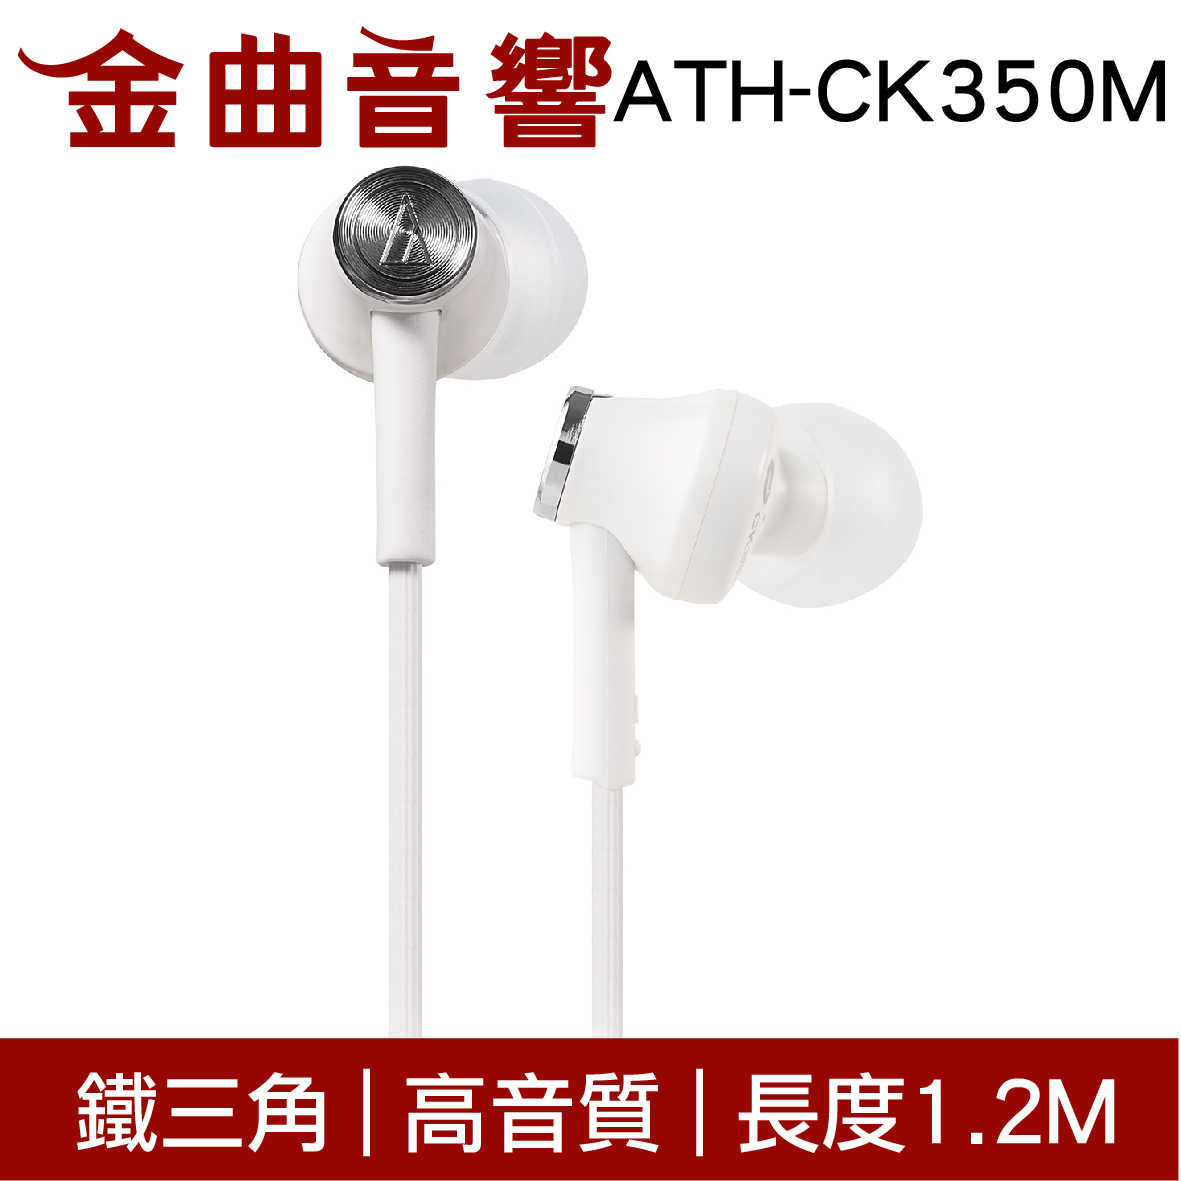 鐵三角 ATH-CK350M 黃色 高音質耳道式耳機 | 金曲音響